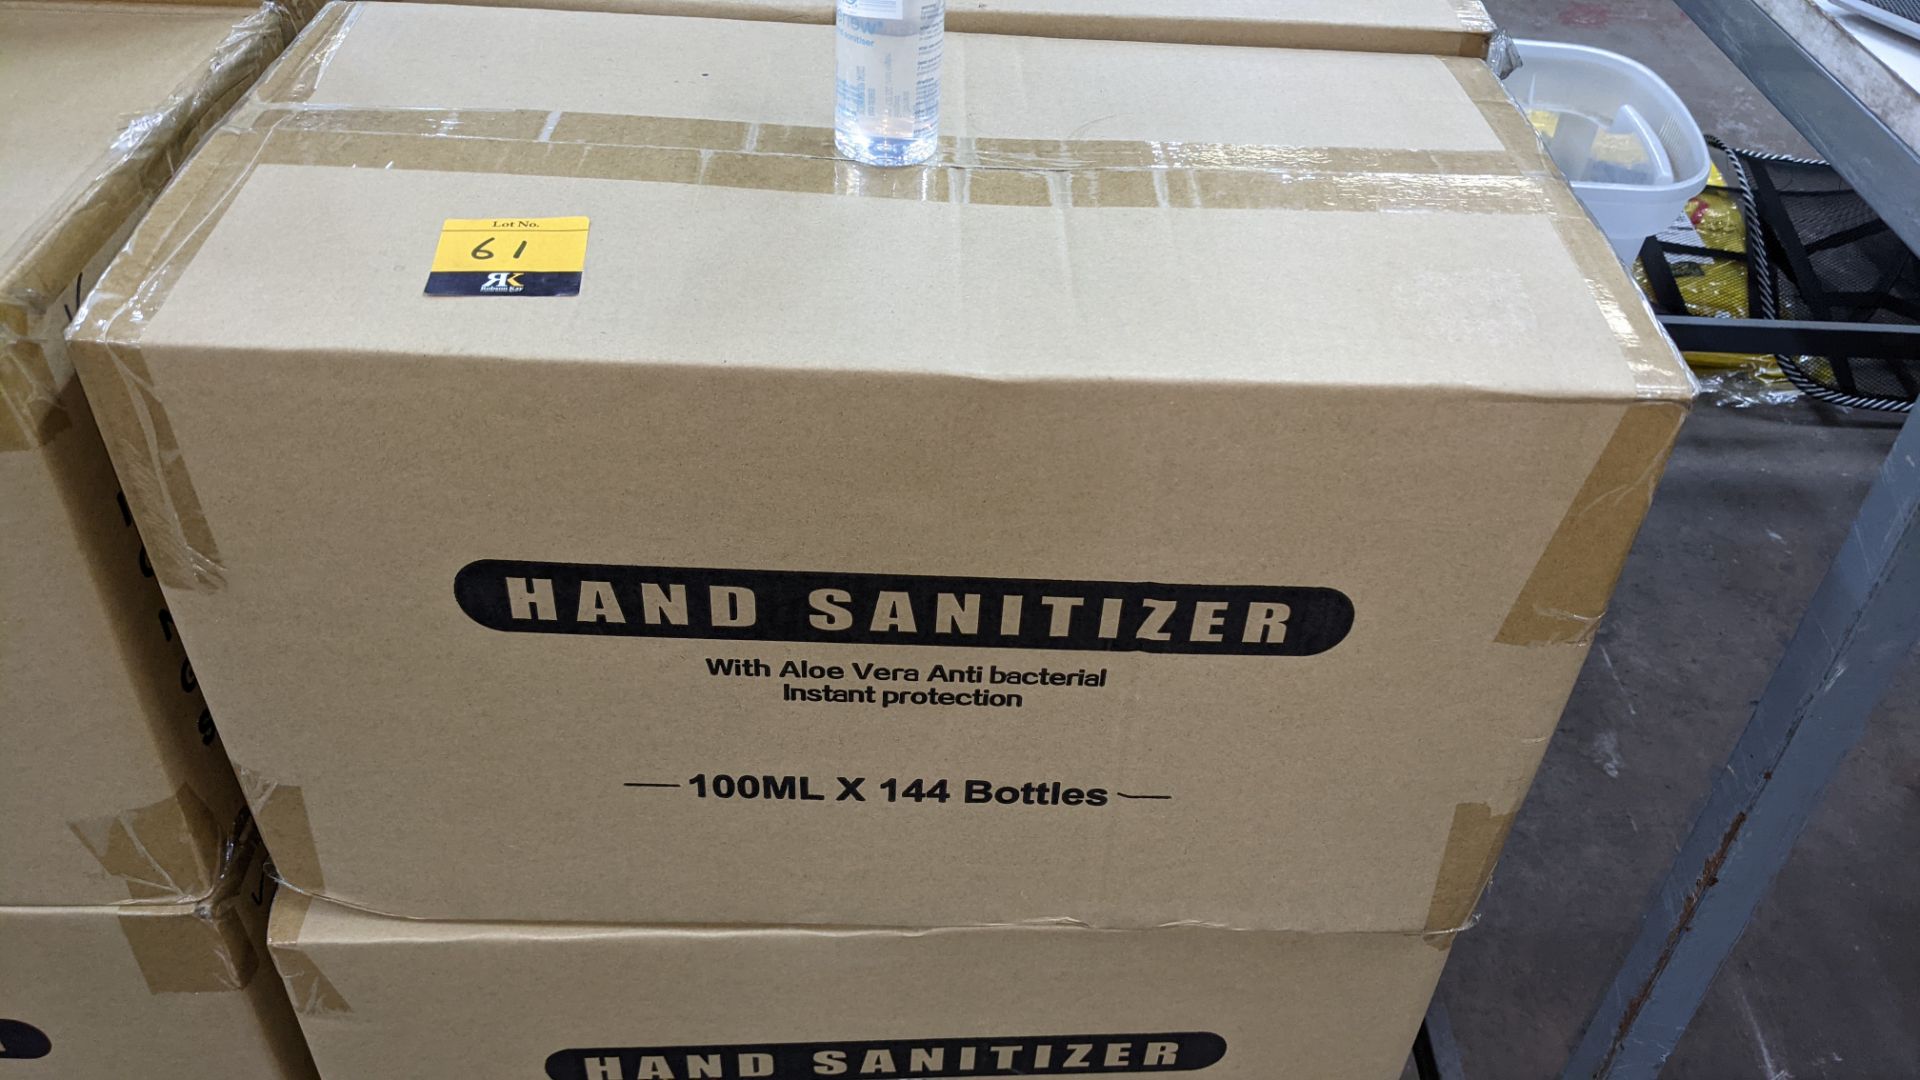 572 off 100ml bottles of hand sanitiser each containing Aloe Vera antibacterial moisturiser. 75% et - Image 3 of 6